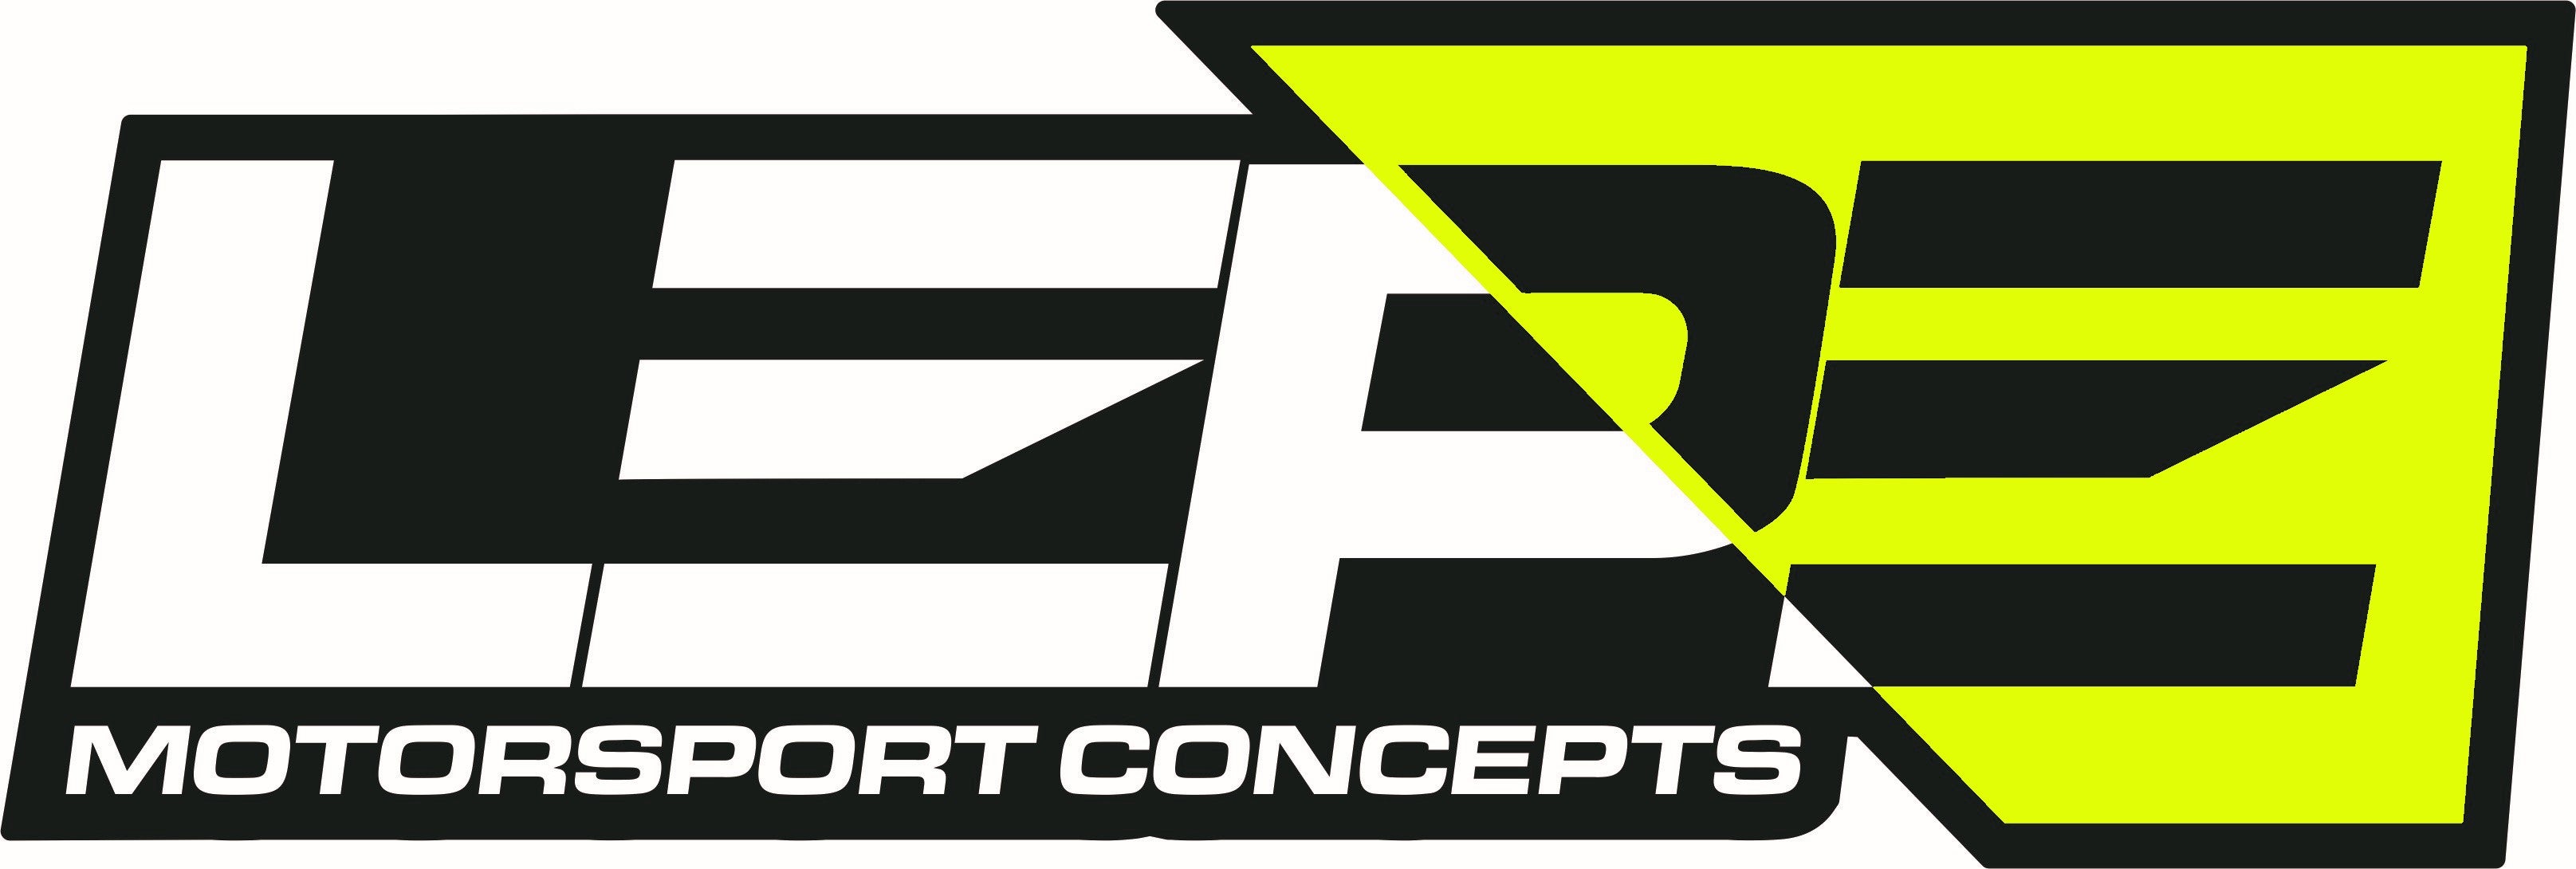 Xtreme Brake Clean 20Ltr – Lepe Motorsport Concepts